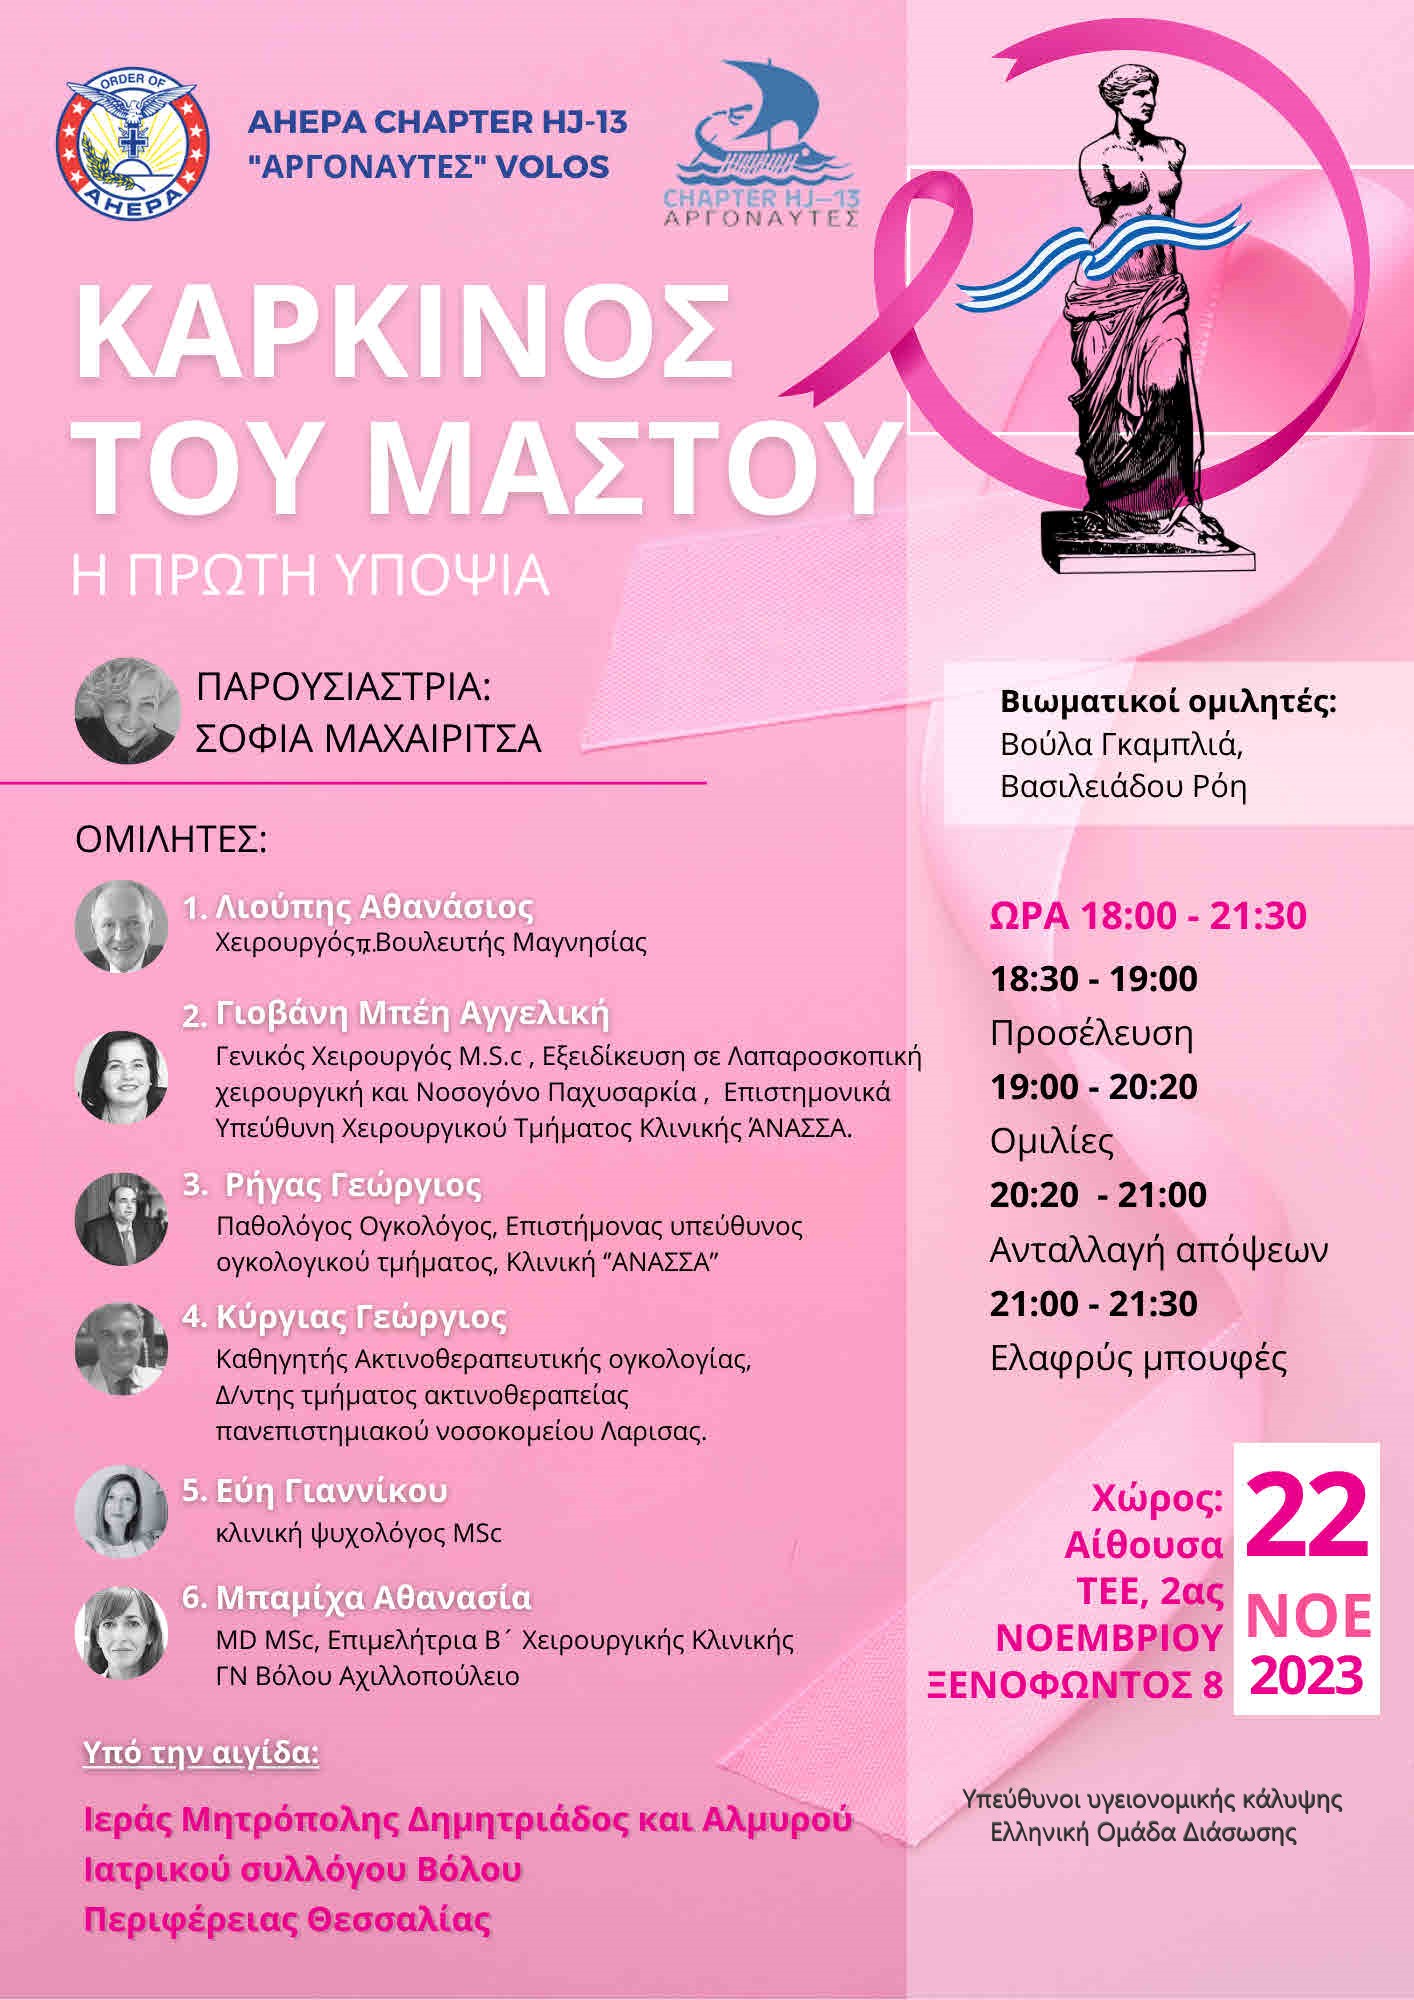 Το τμήμα ahepa hj-13 argonauts volou σας προσκαλεί στην εκδήλωση  με θέμα:

 Καρκίνος του μαστού - Η πρώτη υποψία 